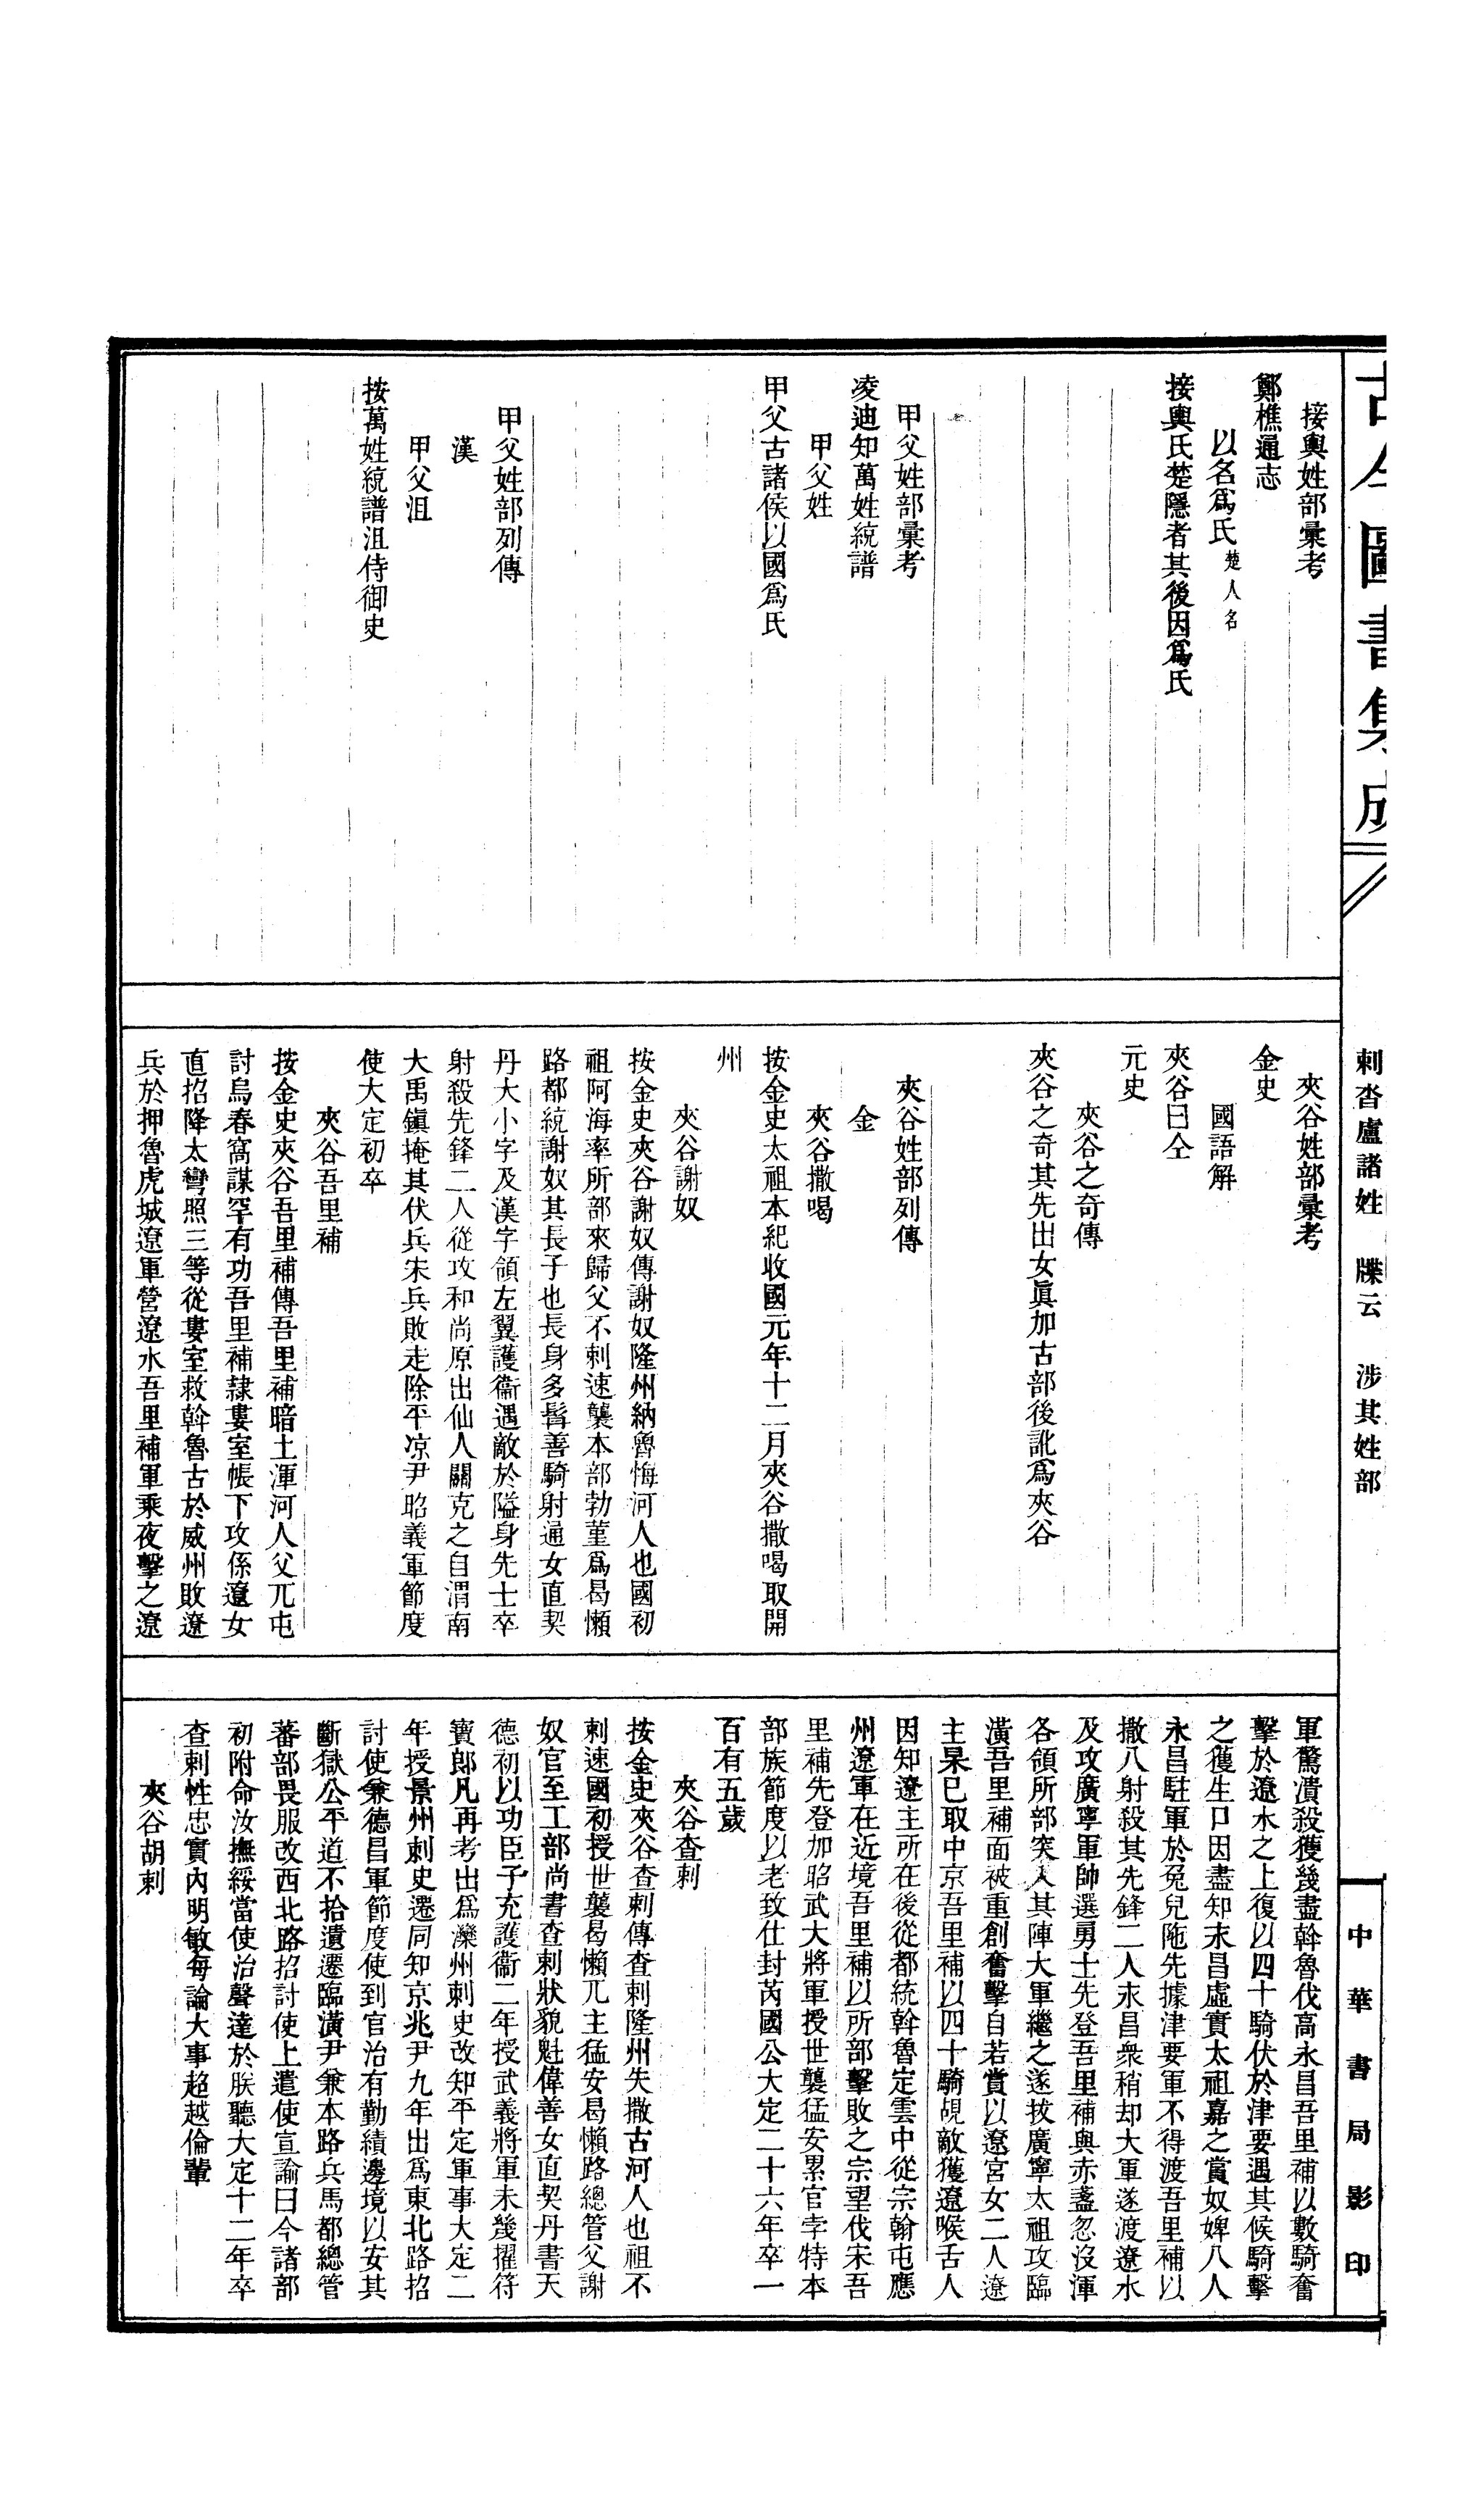 页面 Gujin Tushu Jicheng Volume 384 1700 1725 Djvu 79 維基文庫 自由的圖書館